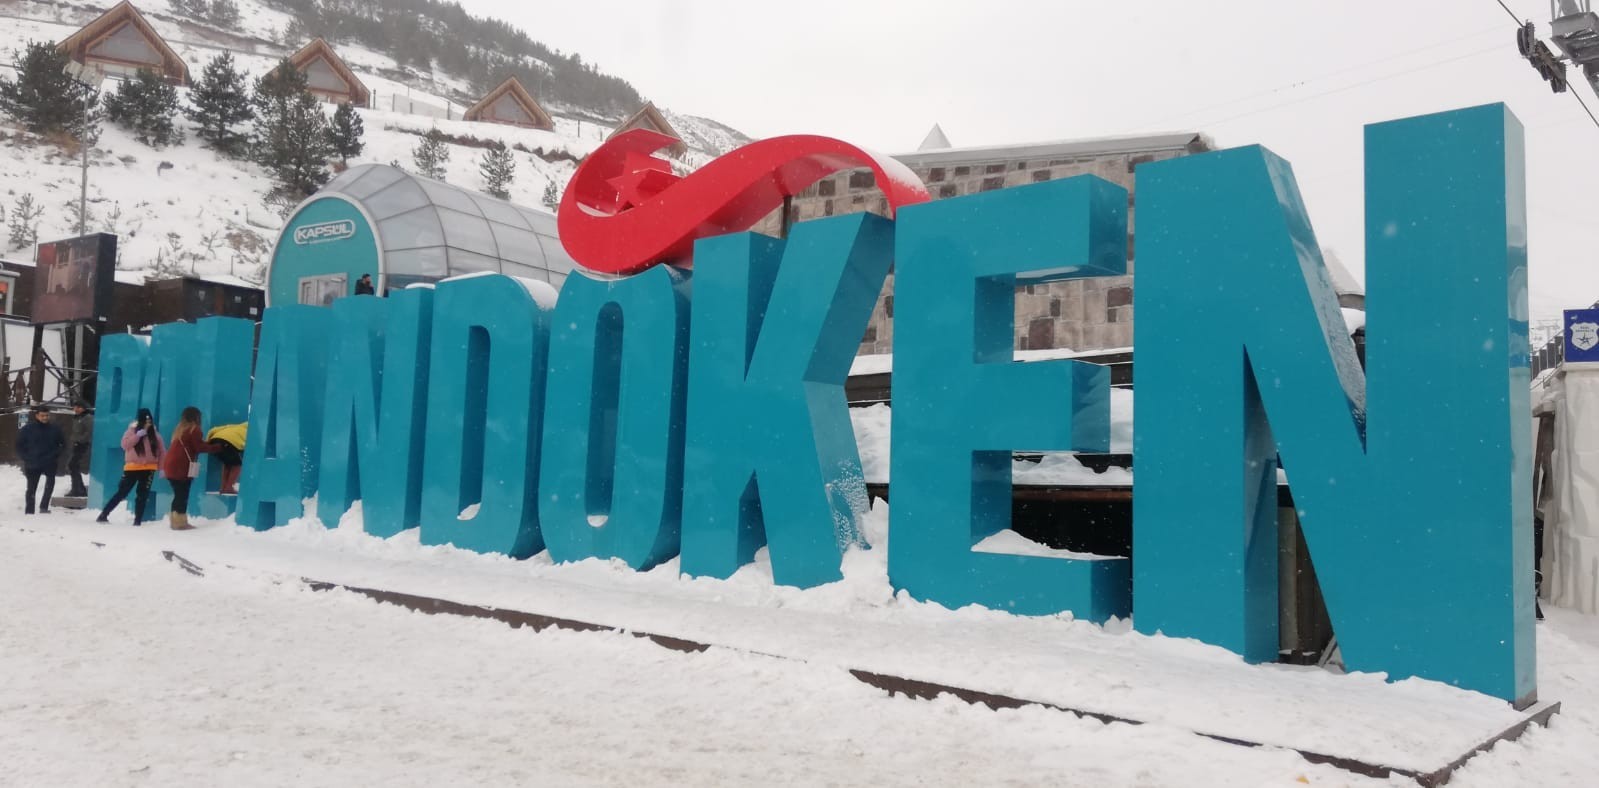 Yılın ilk gününde Palandöken’de kayakçılar yoğunluk oluşturdu #erzurum